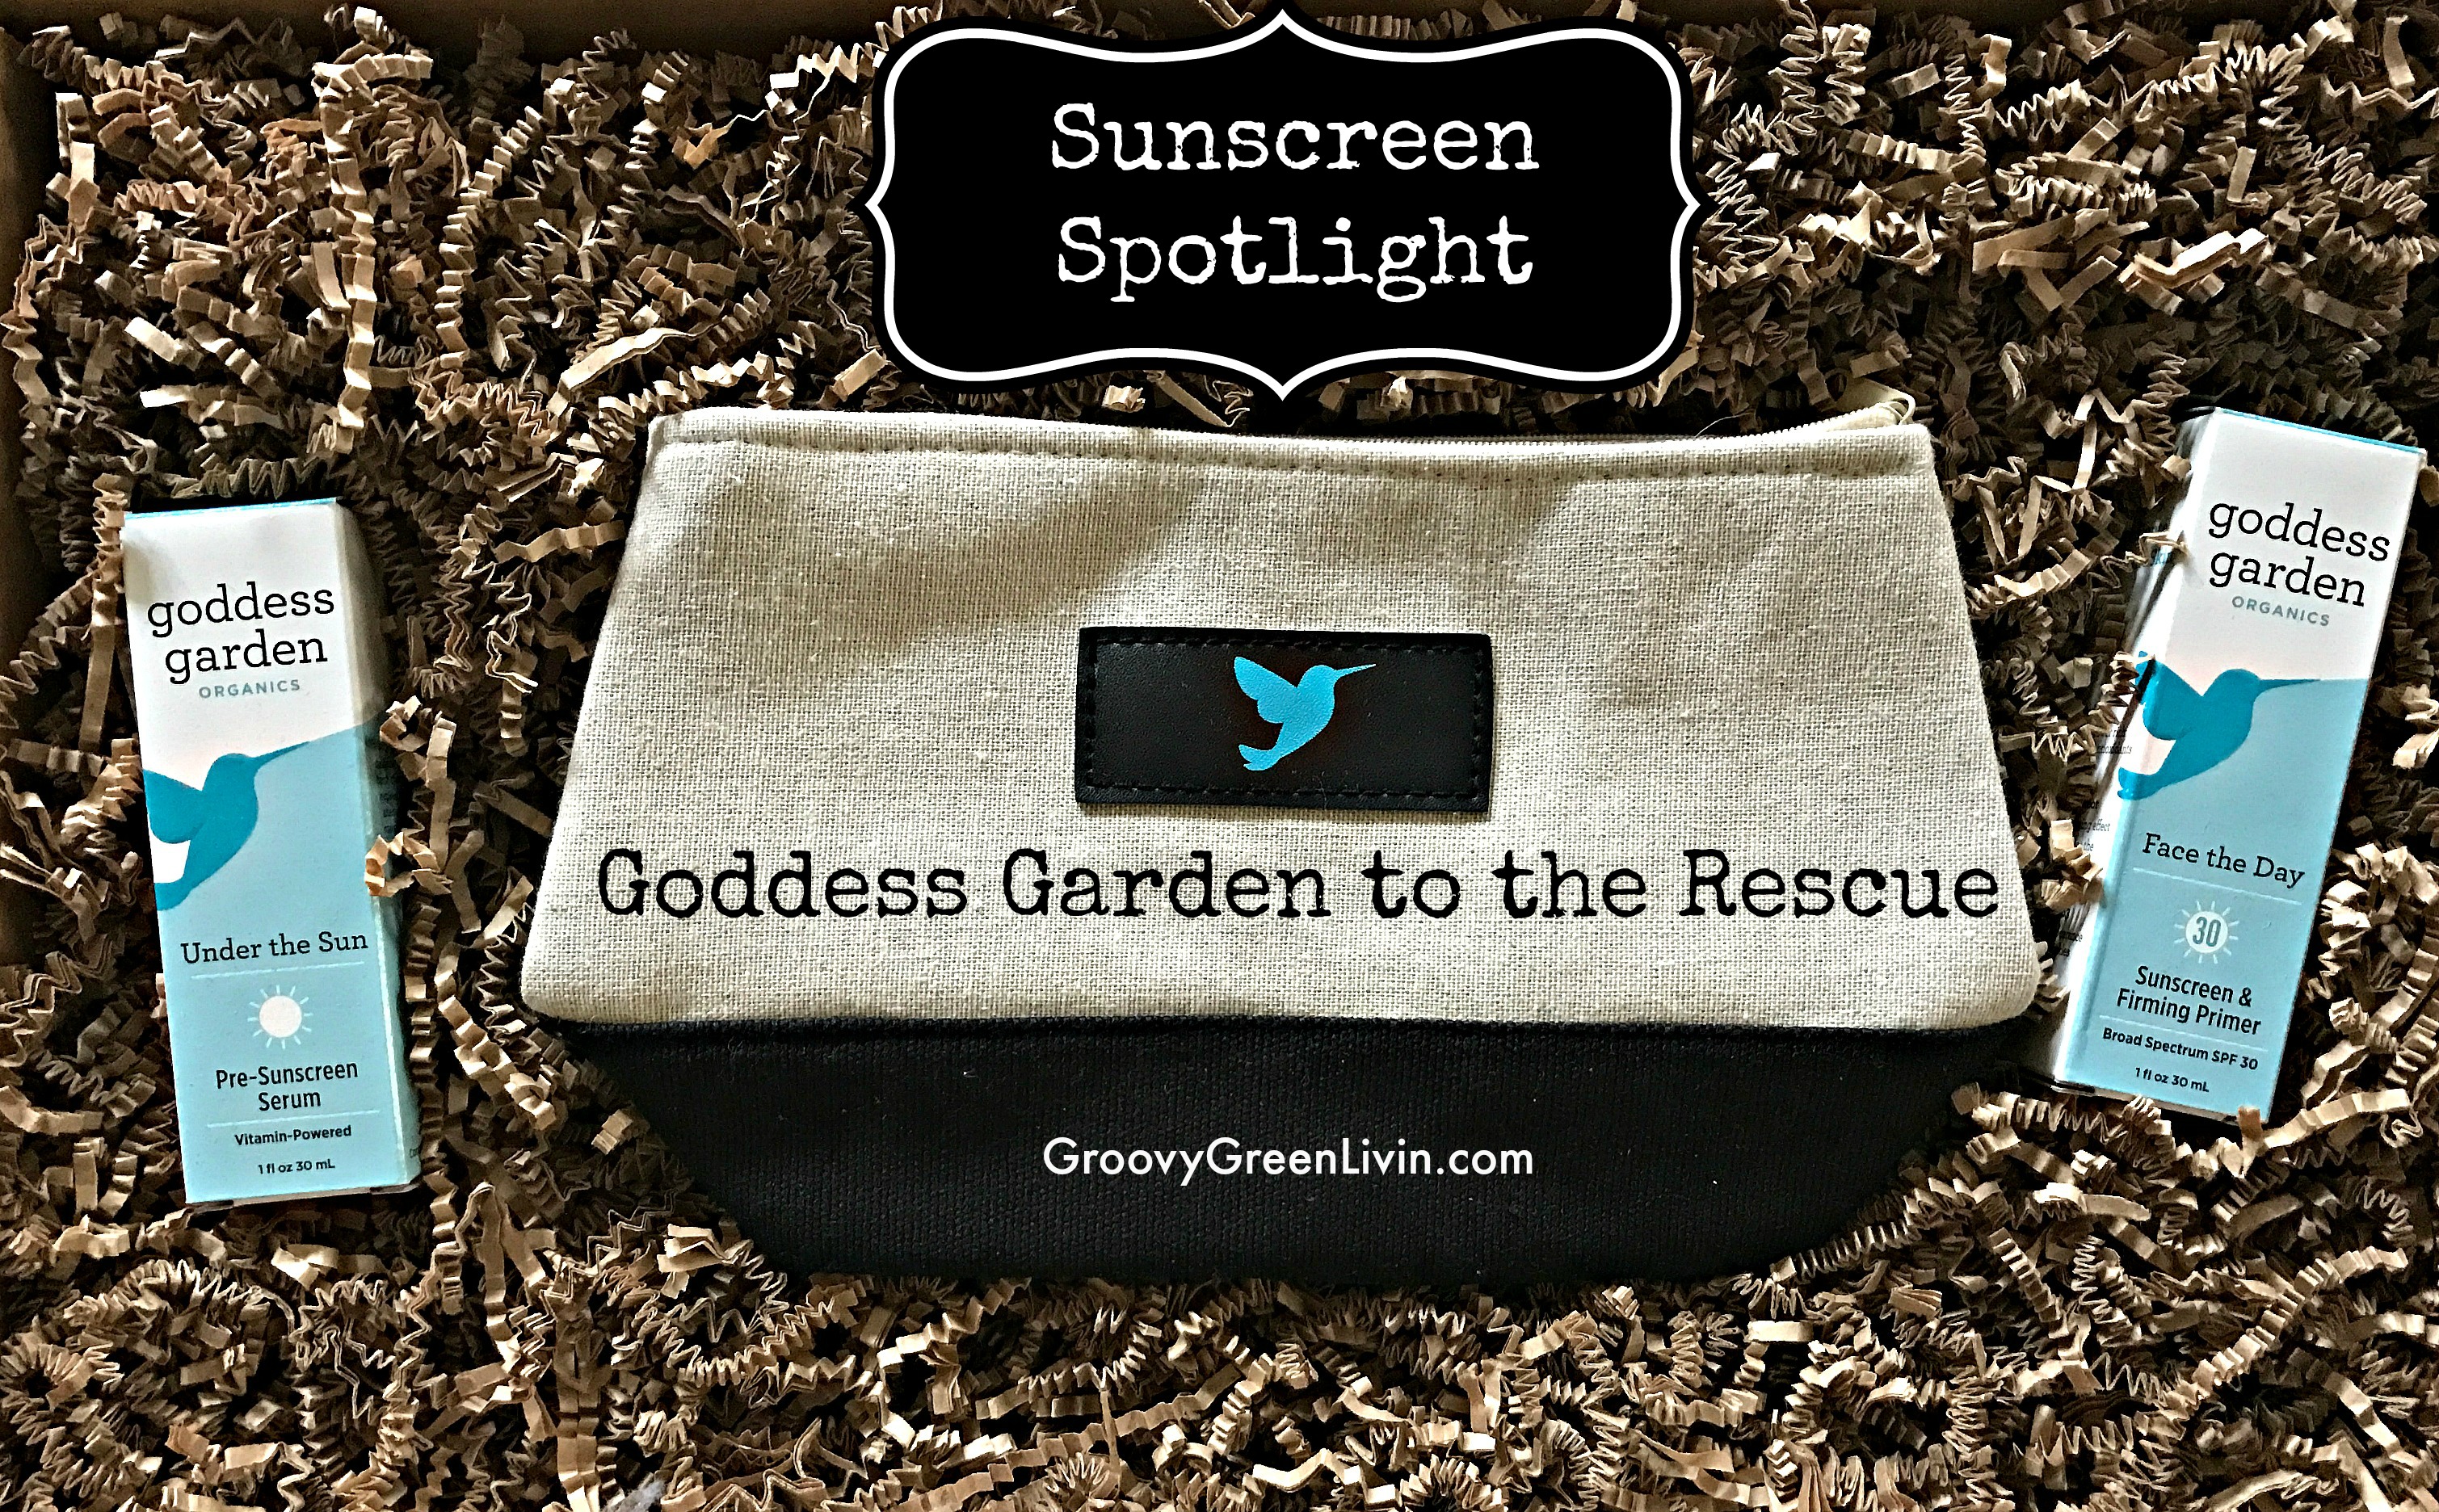 Sunscreen Spotlight: Goddess Garden to the Rescue!